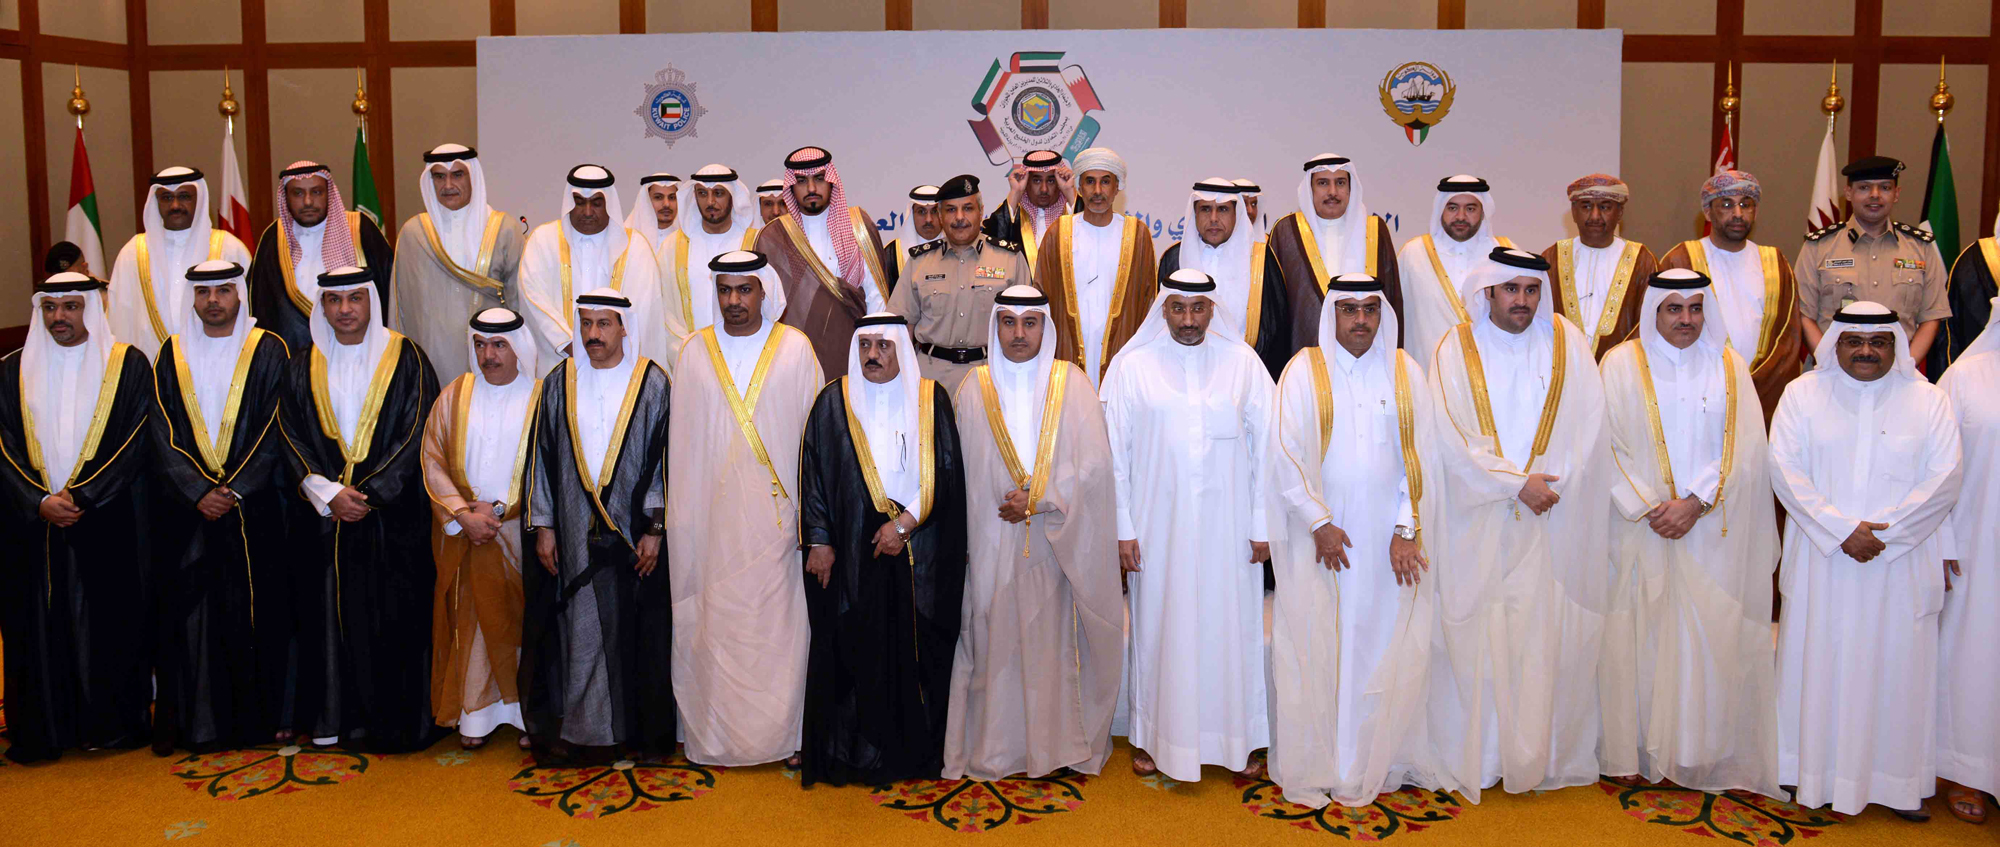 الاجتماع ال31 للمديرين العامين للجوازات بدول مجلس التعاون الخليجي